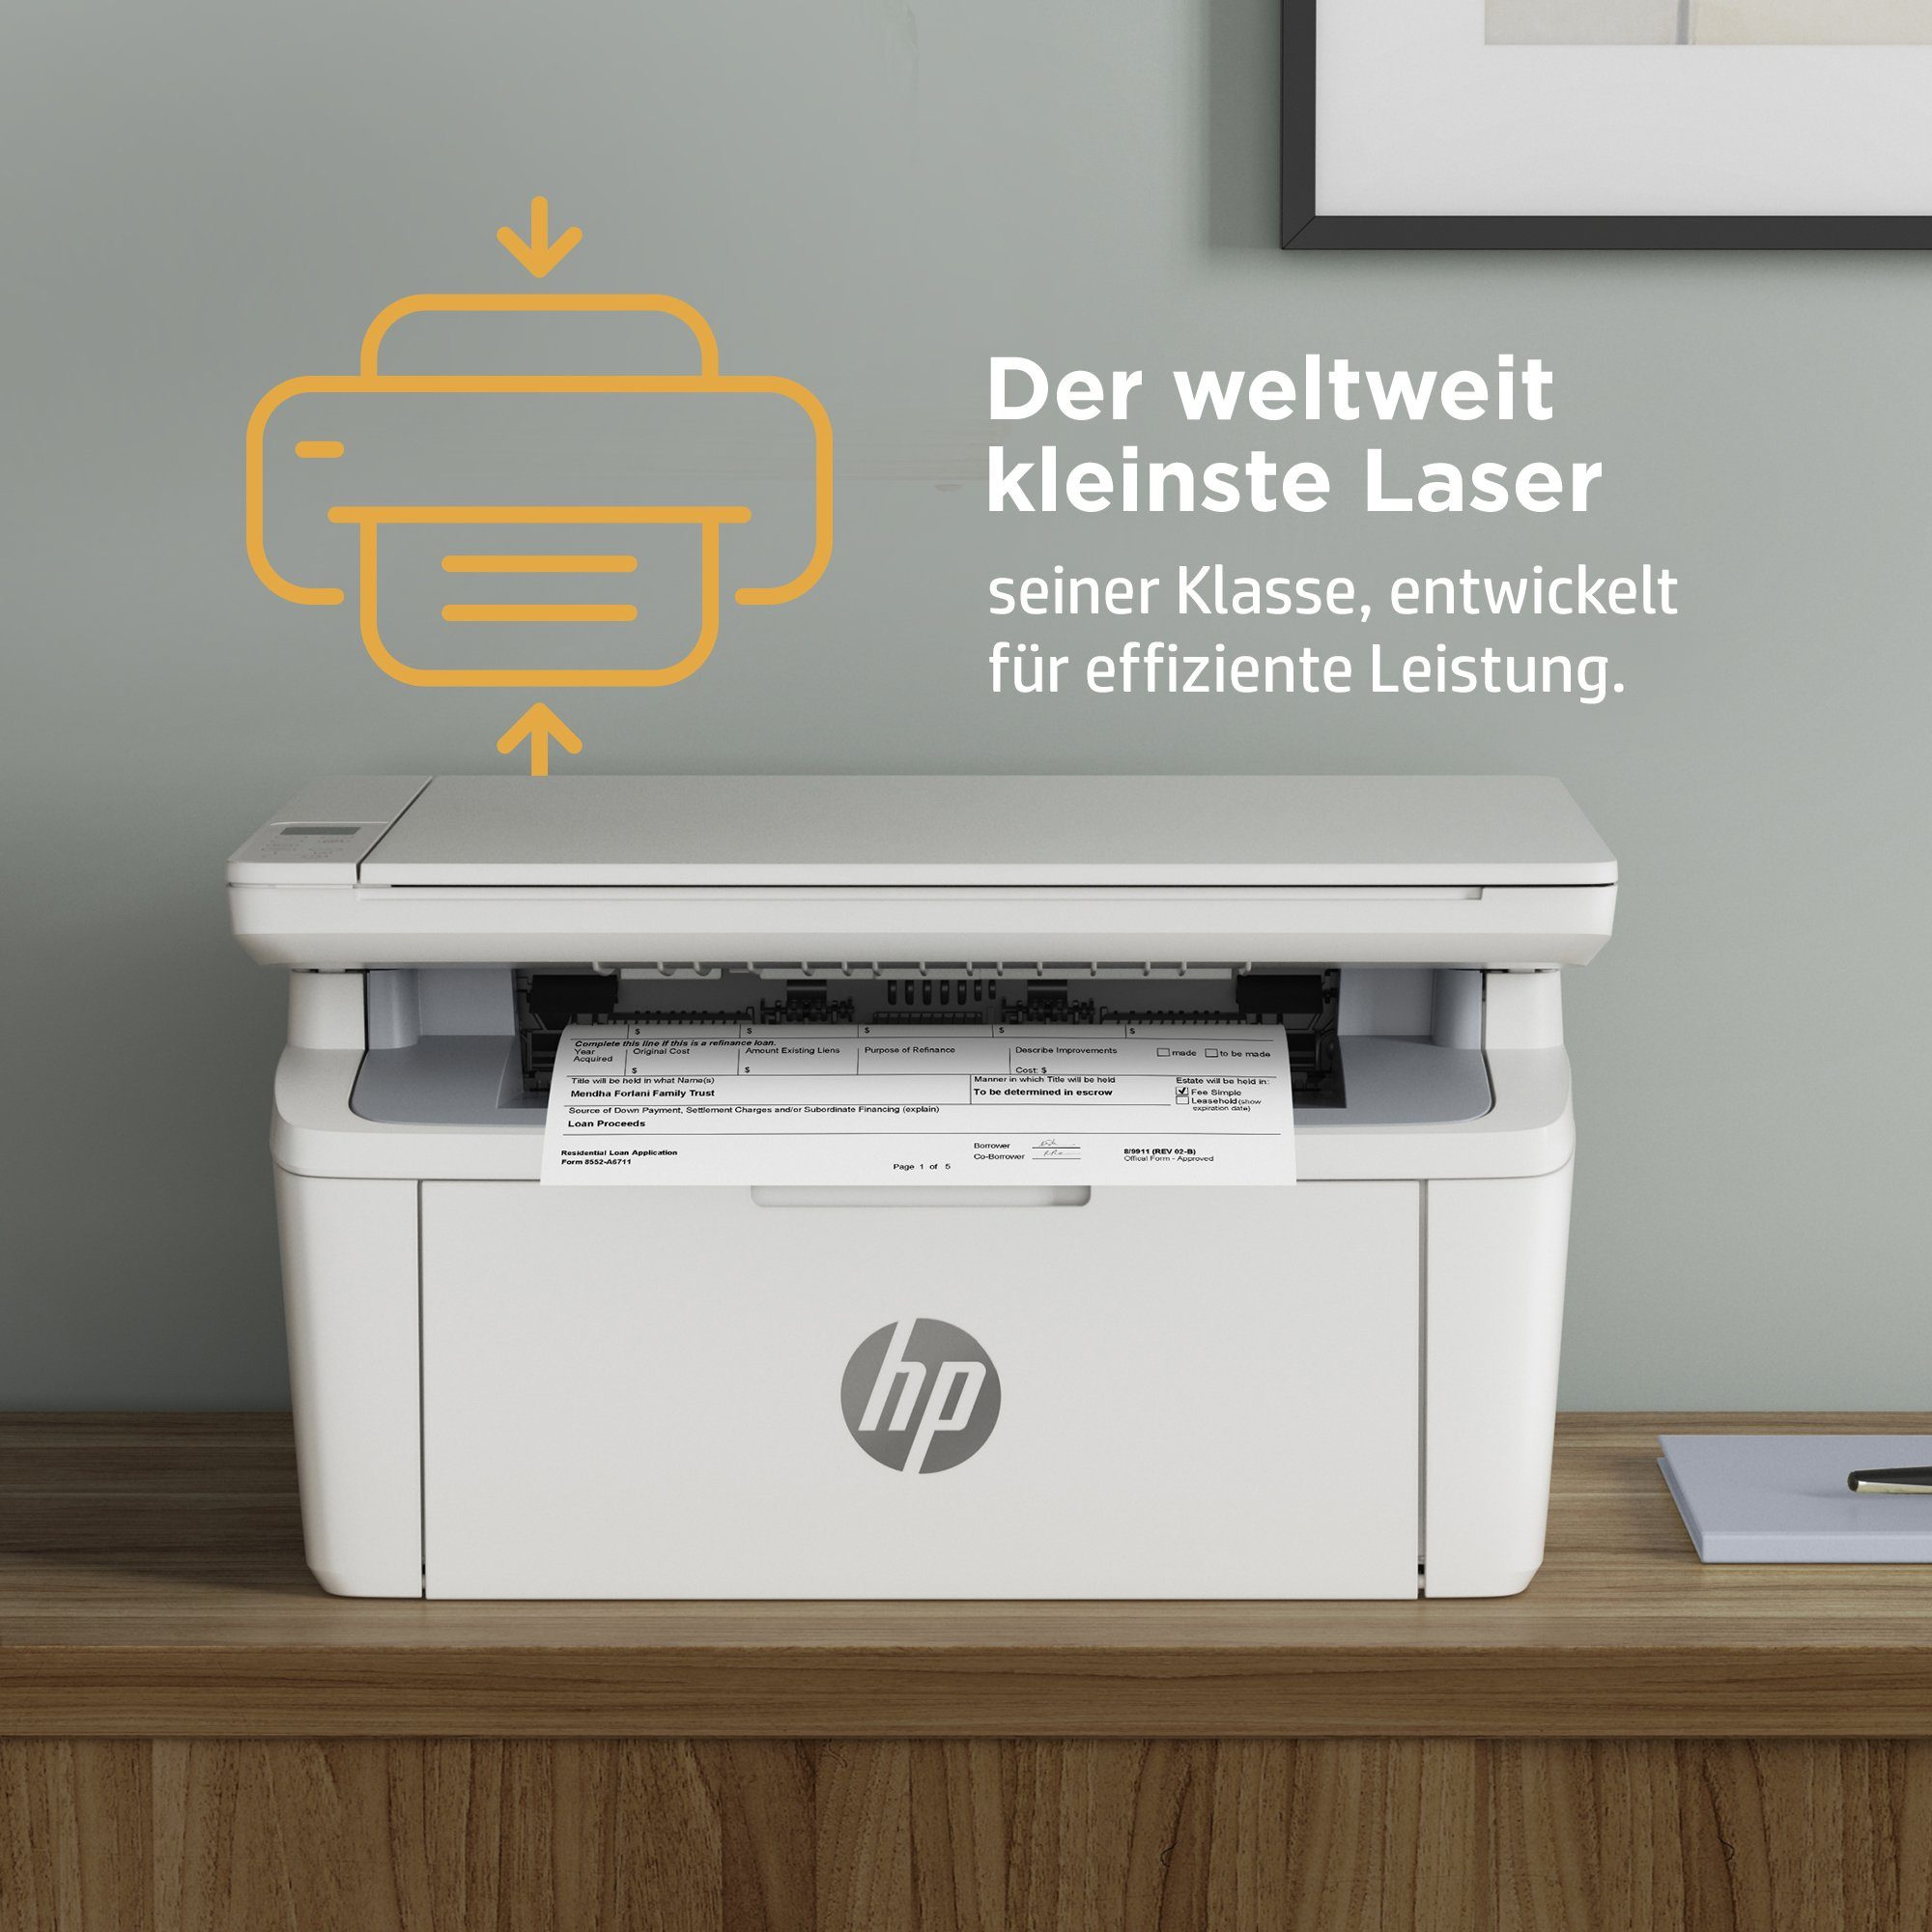 Multifunktionsdrucker, WLAN kompatibel) (Wi-Fi), HP M140we LaserJet Ink Drucker HP+ Instant (Bluetooth, MFP